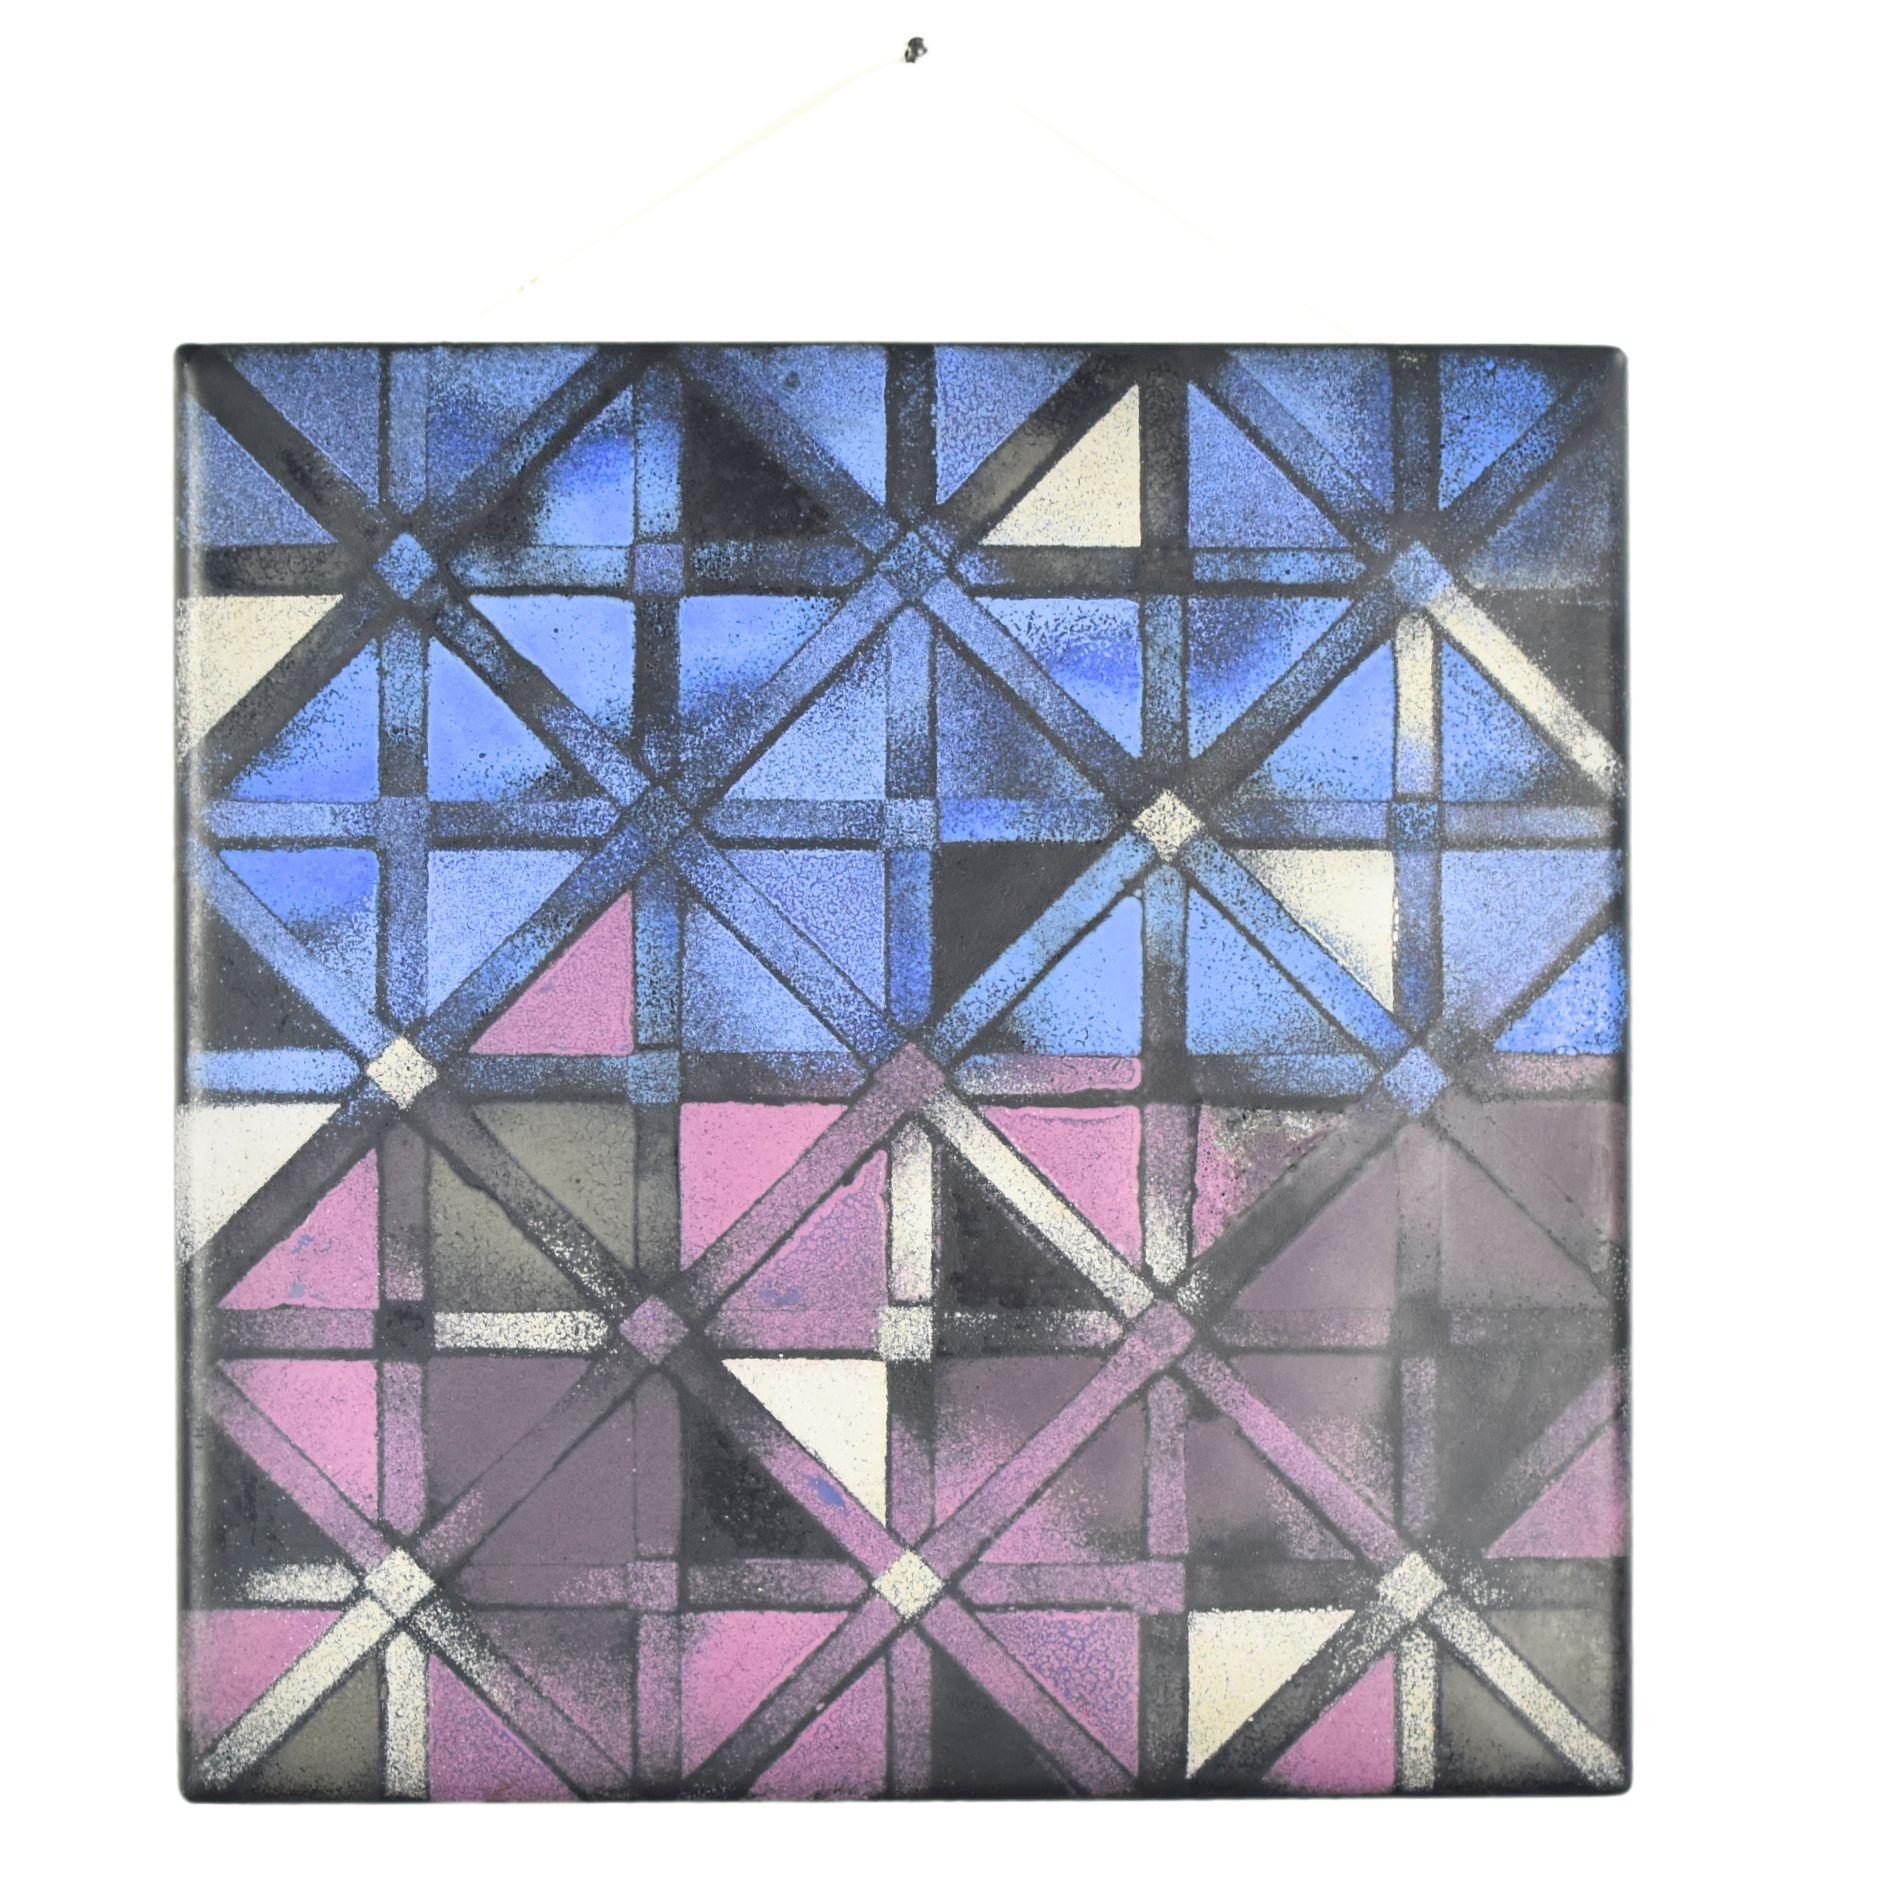 Auffällige modernistische emaillierte Wandtafel mit einem geometrischen Muster in Violett-, Blau-, Silber- und Schwarztönen, signiert von C.P. C. Koch und datiert 1966.